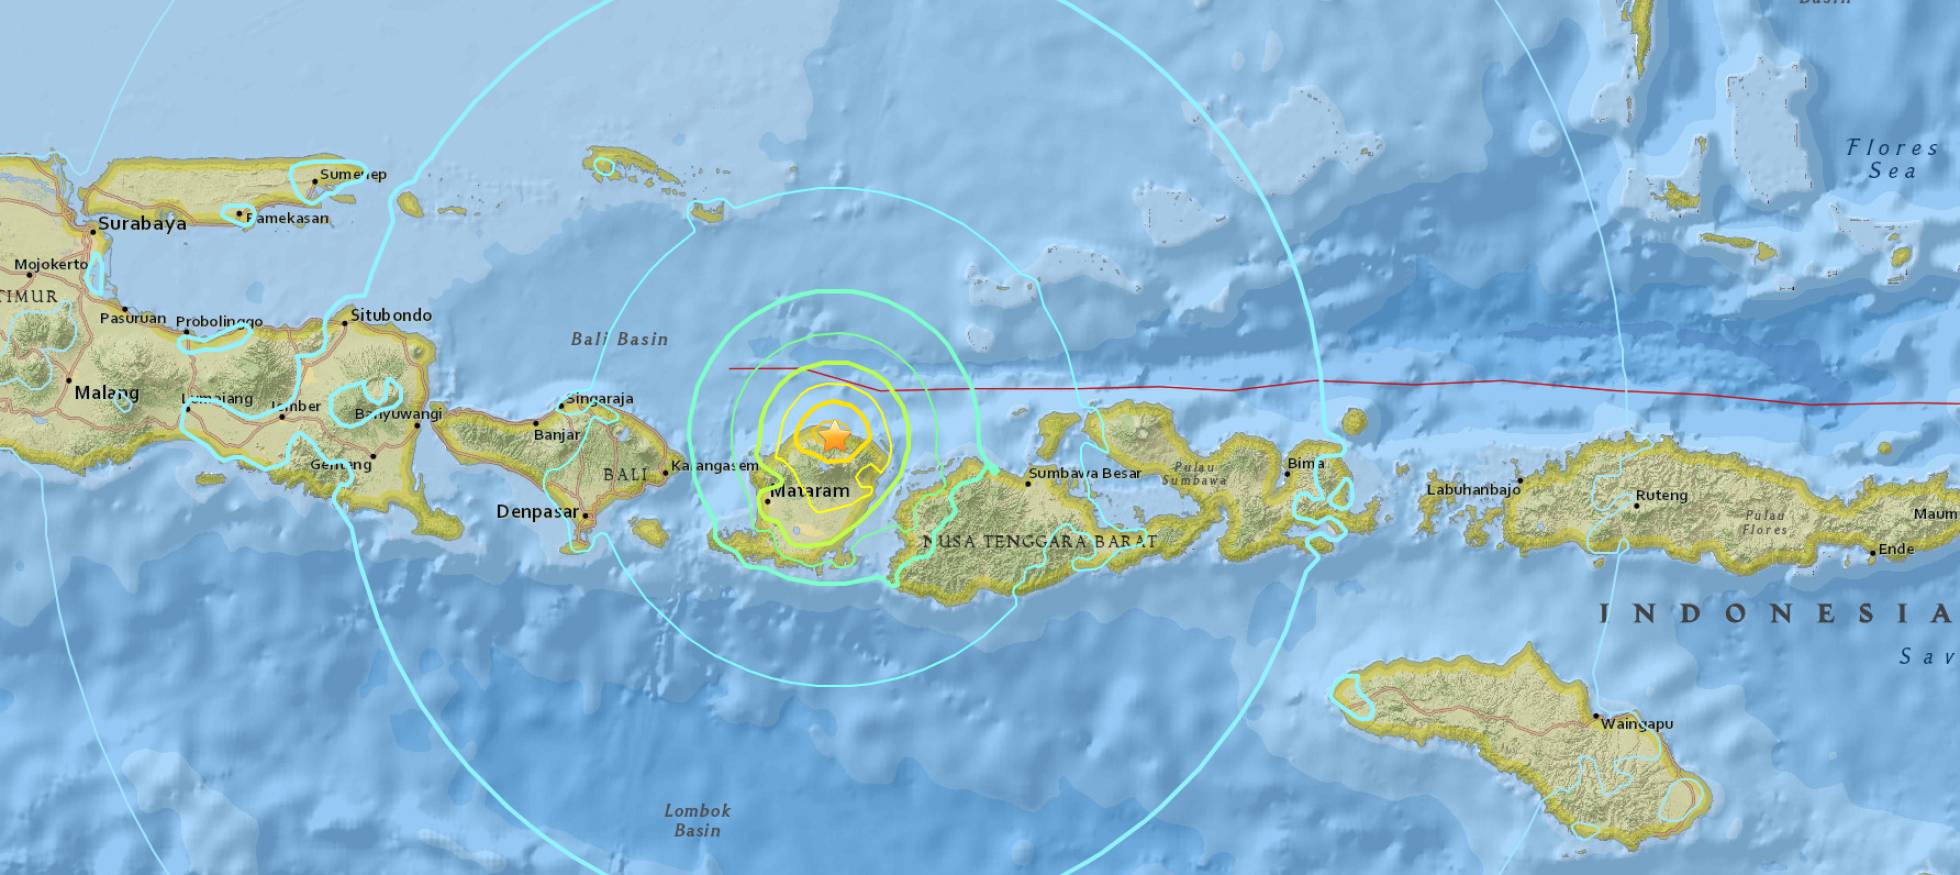 Fuerte terremoto sacude a Indonesia: Emiten alerta de tsunami